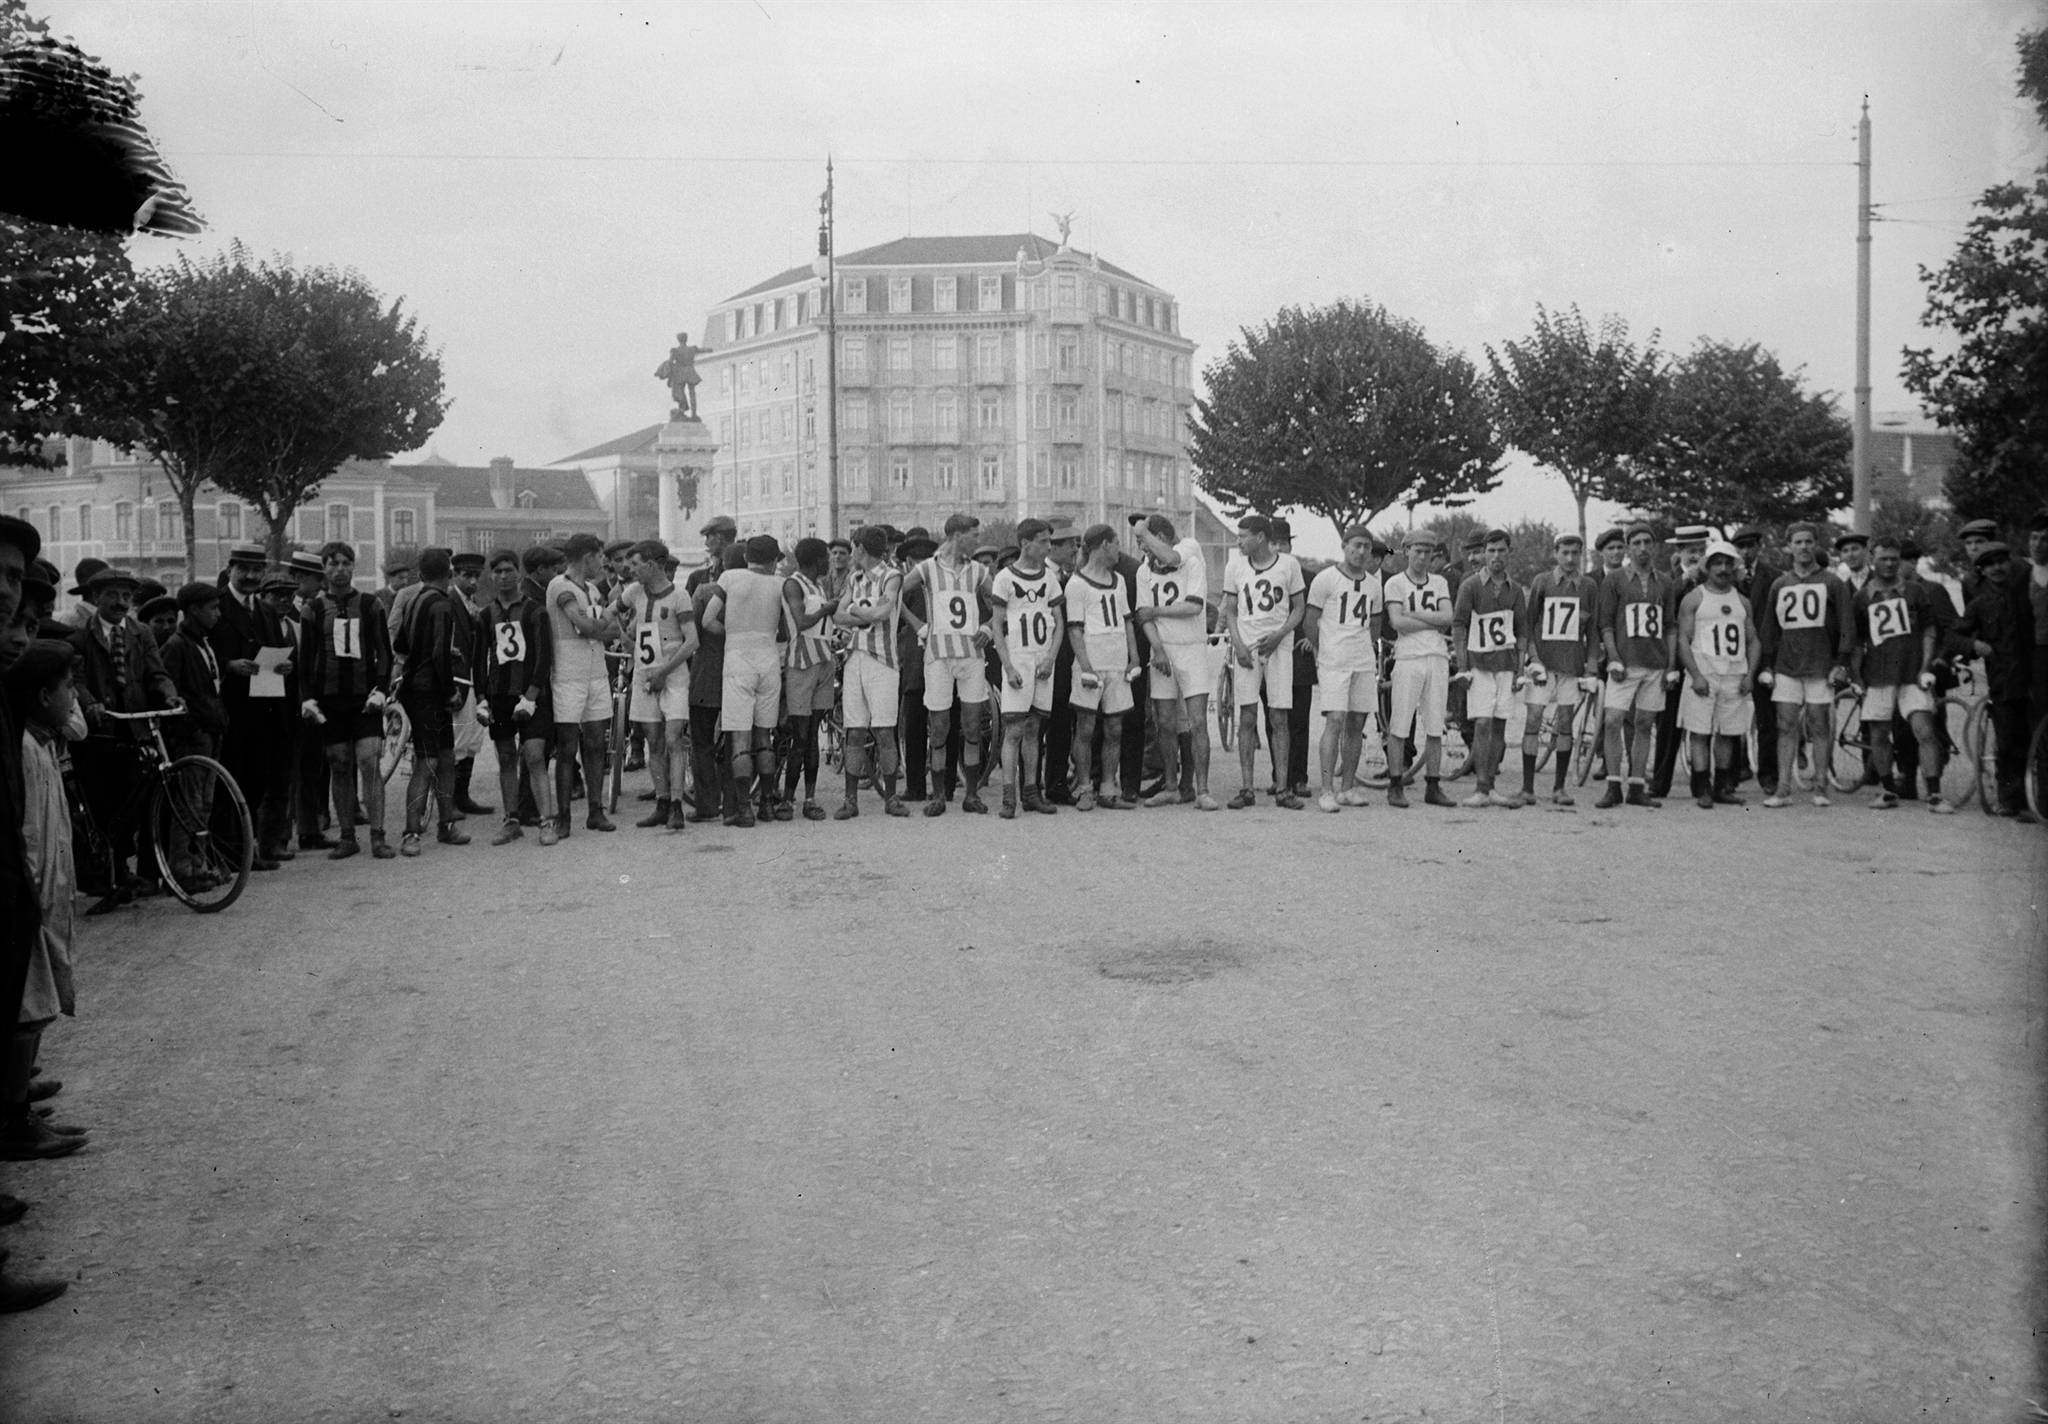 -61852b3bb1816--61852b3bb1817Atleta-Atletismo-Duque de Saldanha_praca, Arroios, Lisboa, Portugal_entre 1911 e 1912.jpg